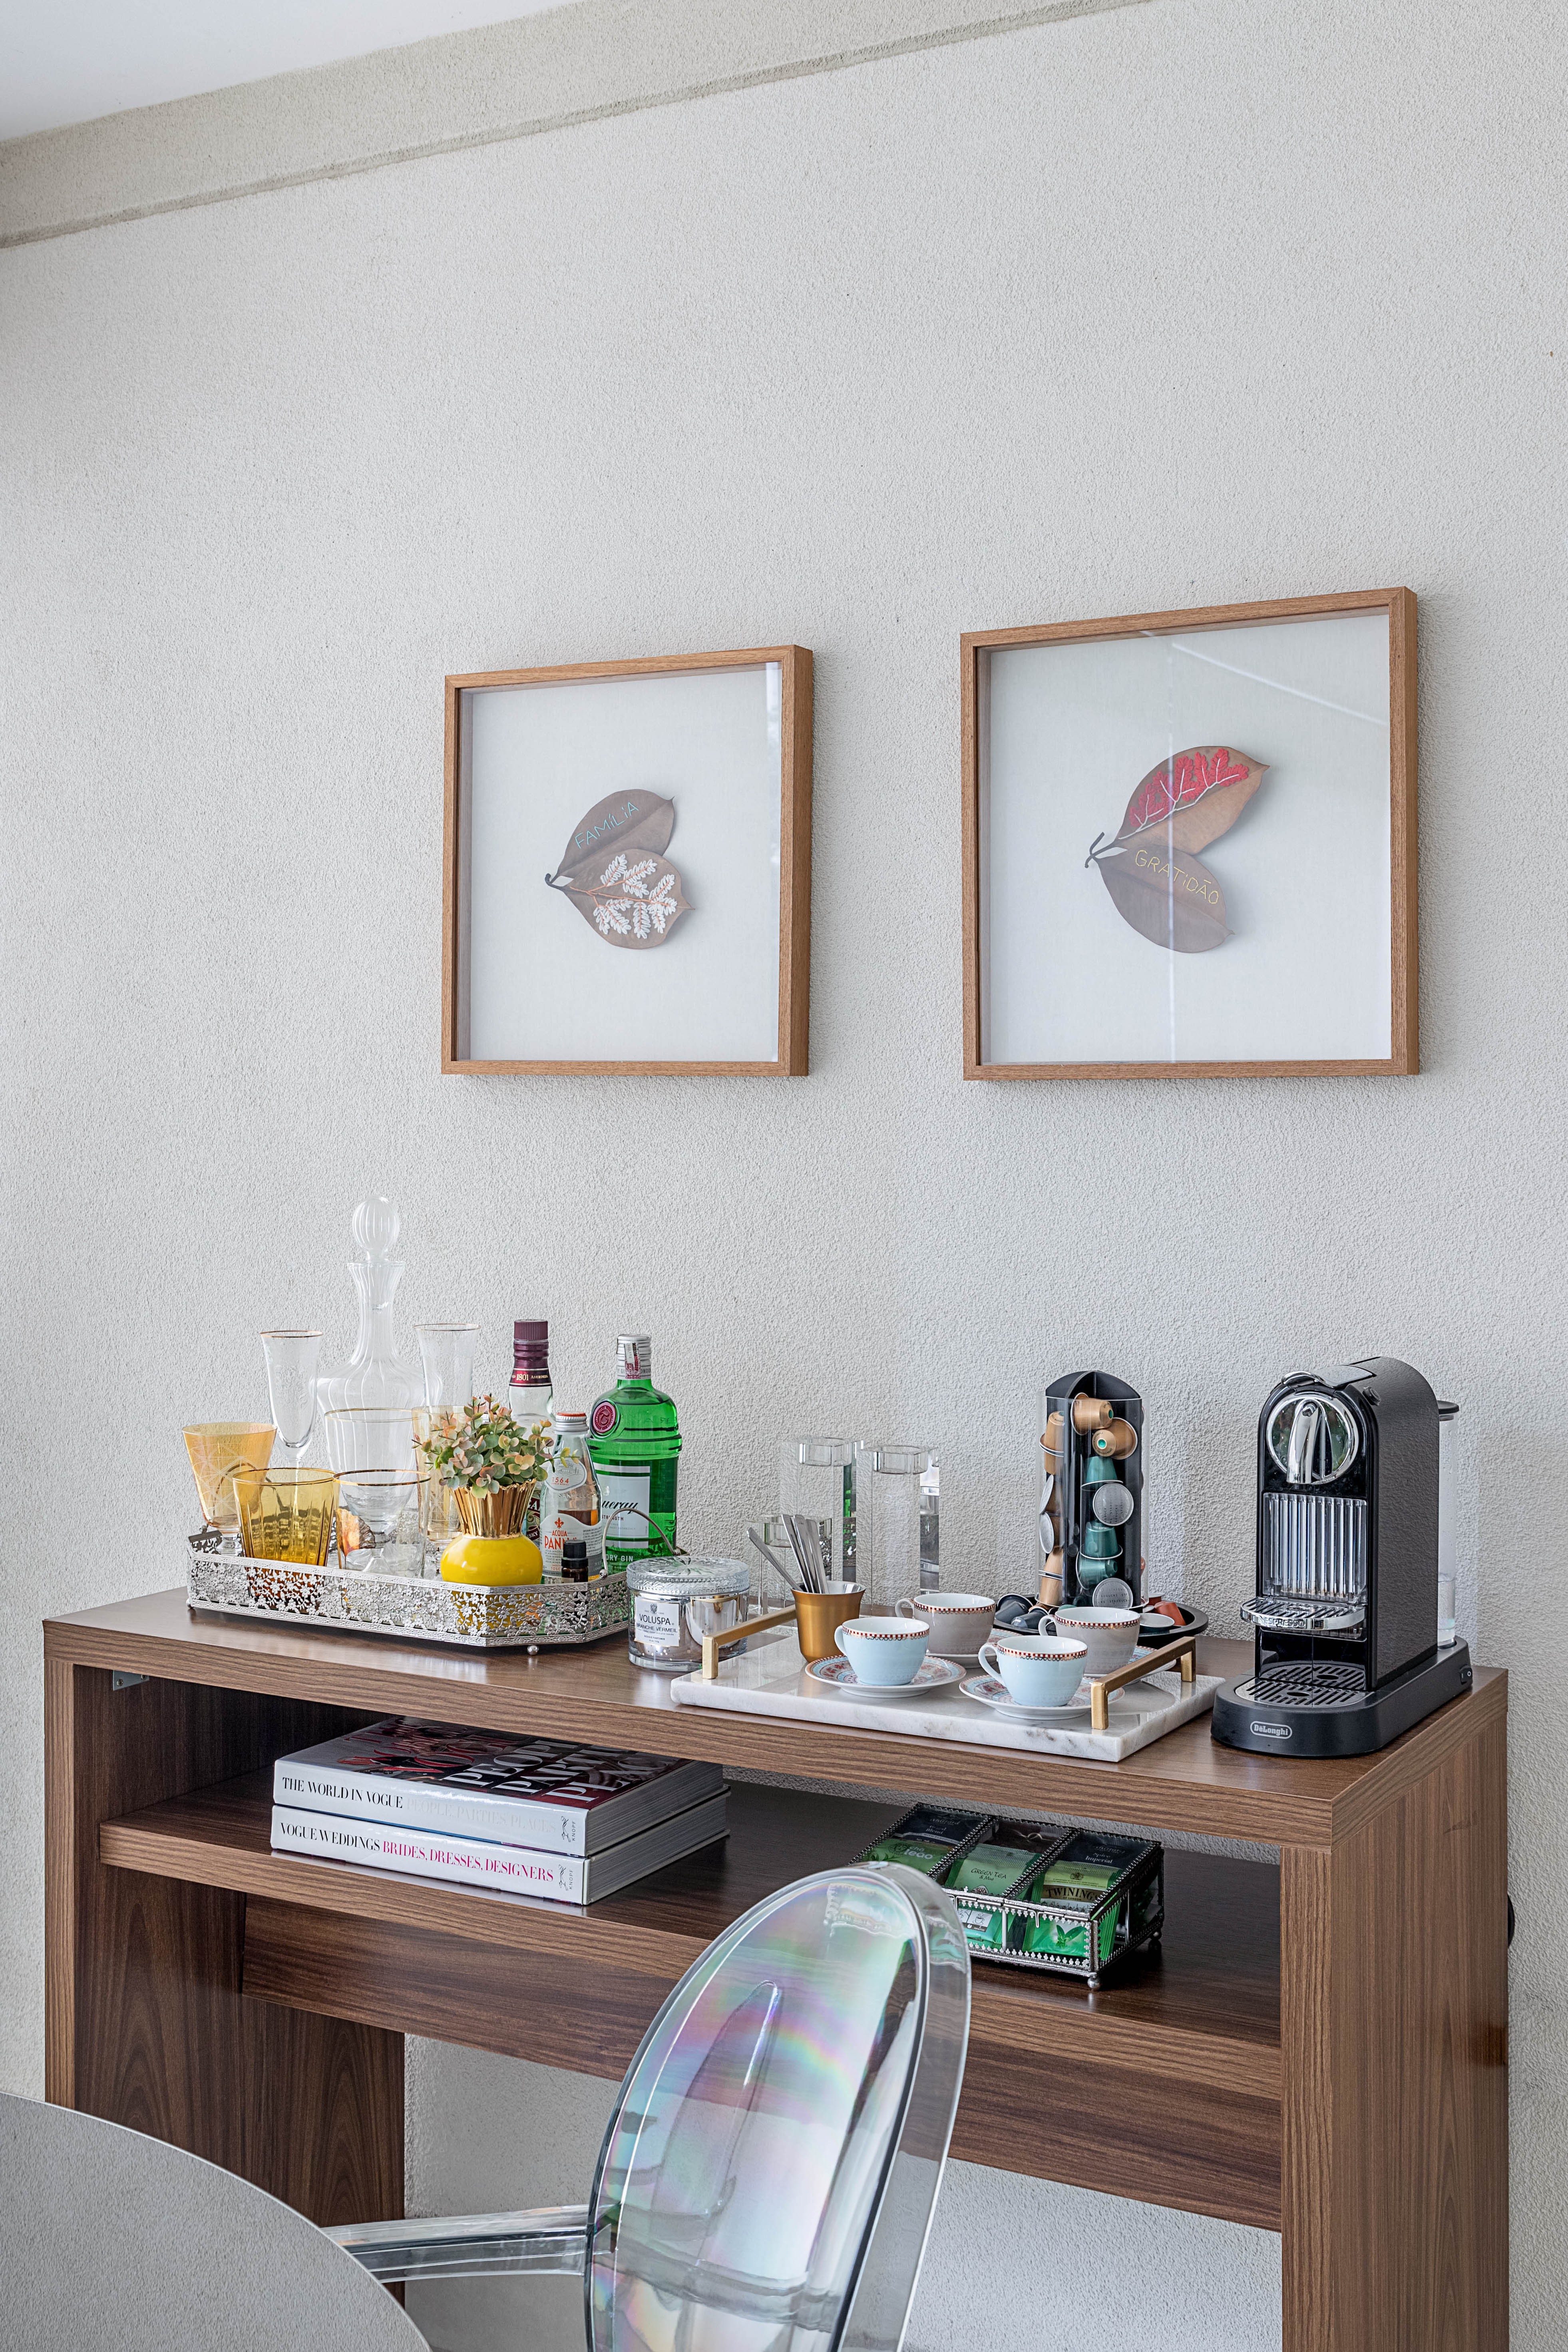 O aparador acomoda a cafeteira e o minibar, criando um cantinho gostoso e colorido. Projeto da arquiteta Carina Dal Fabbro (Foto: Rafael Renzo / Divulgação)